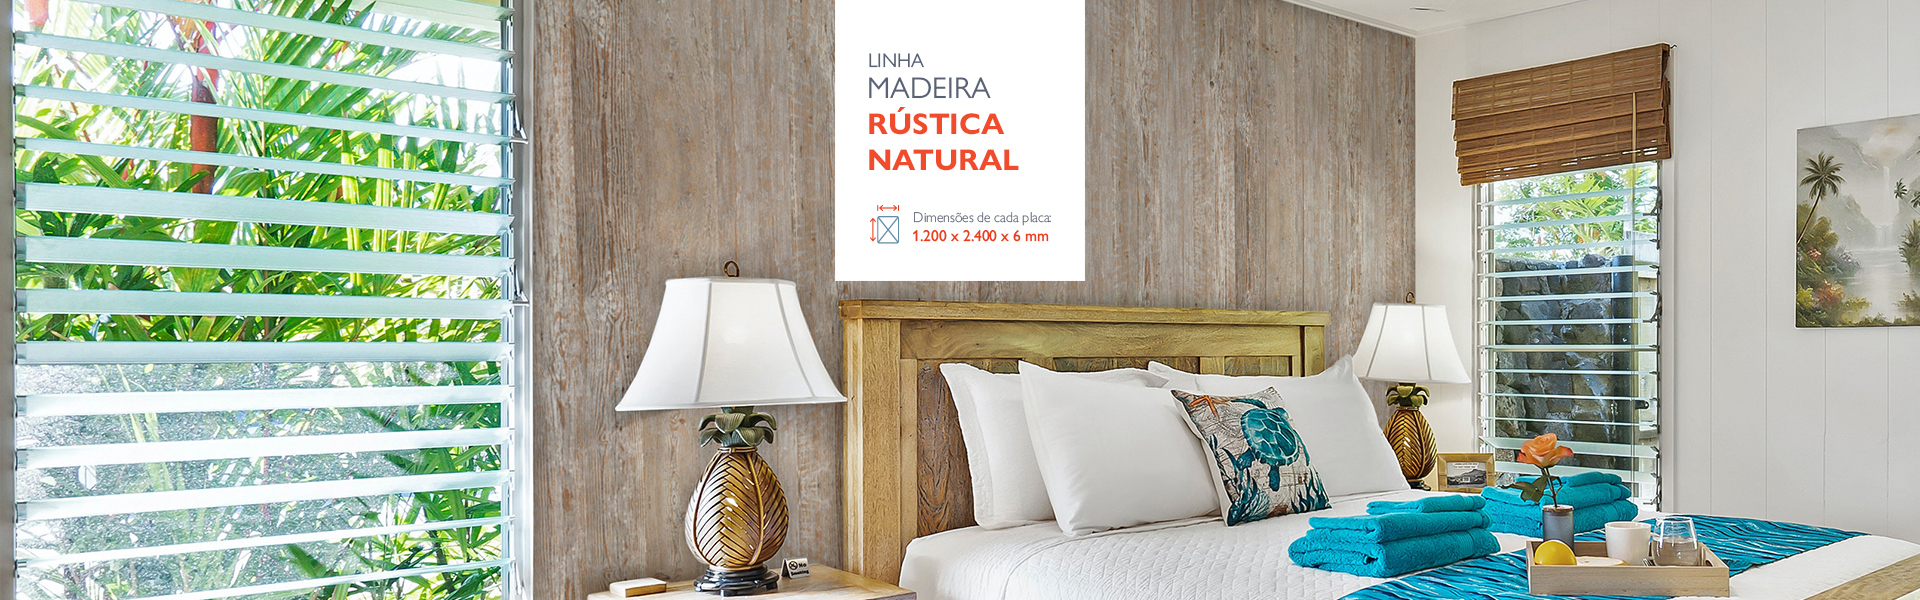 banner-Madeira-Rustica-natural